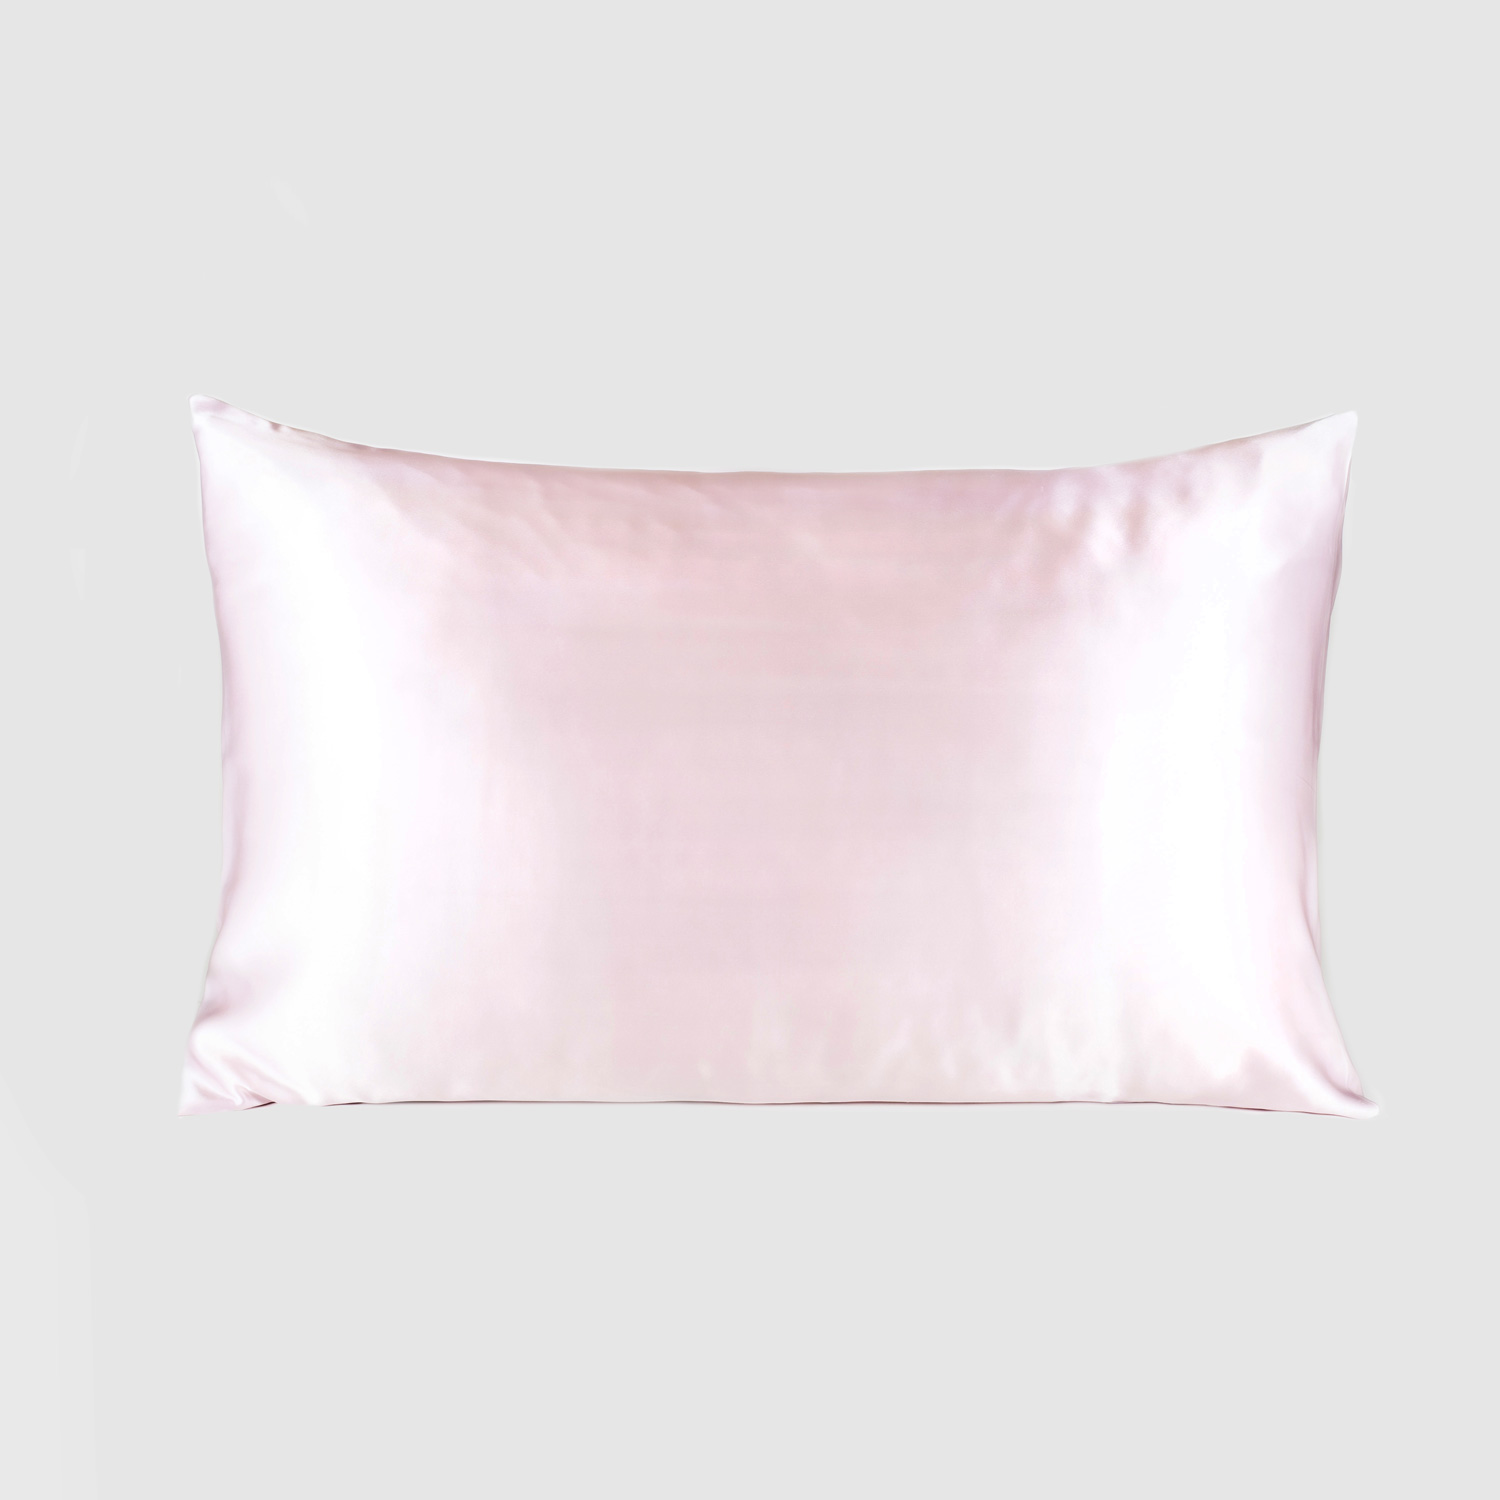 English rose pillow case